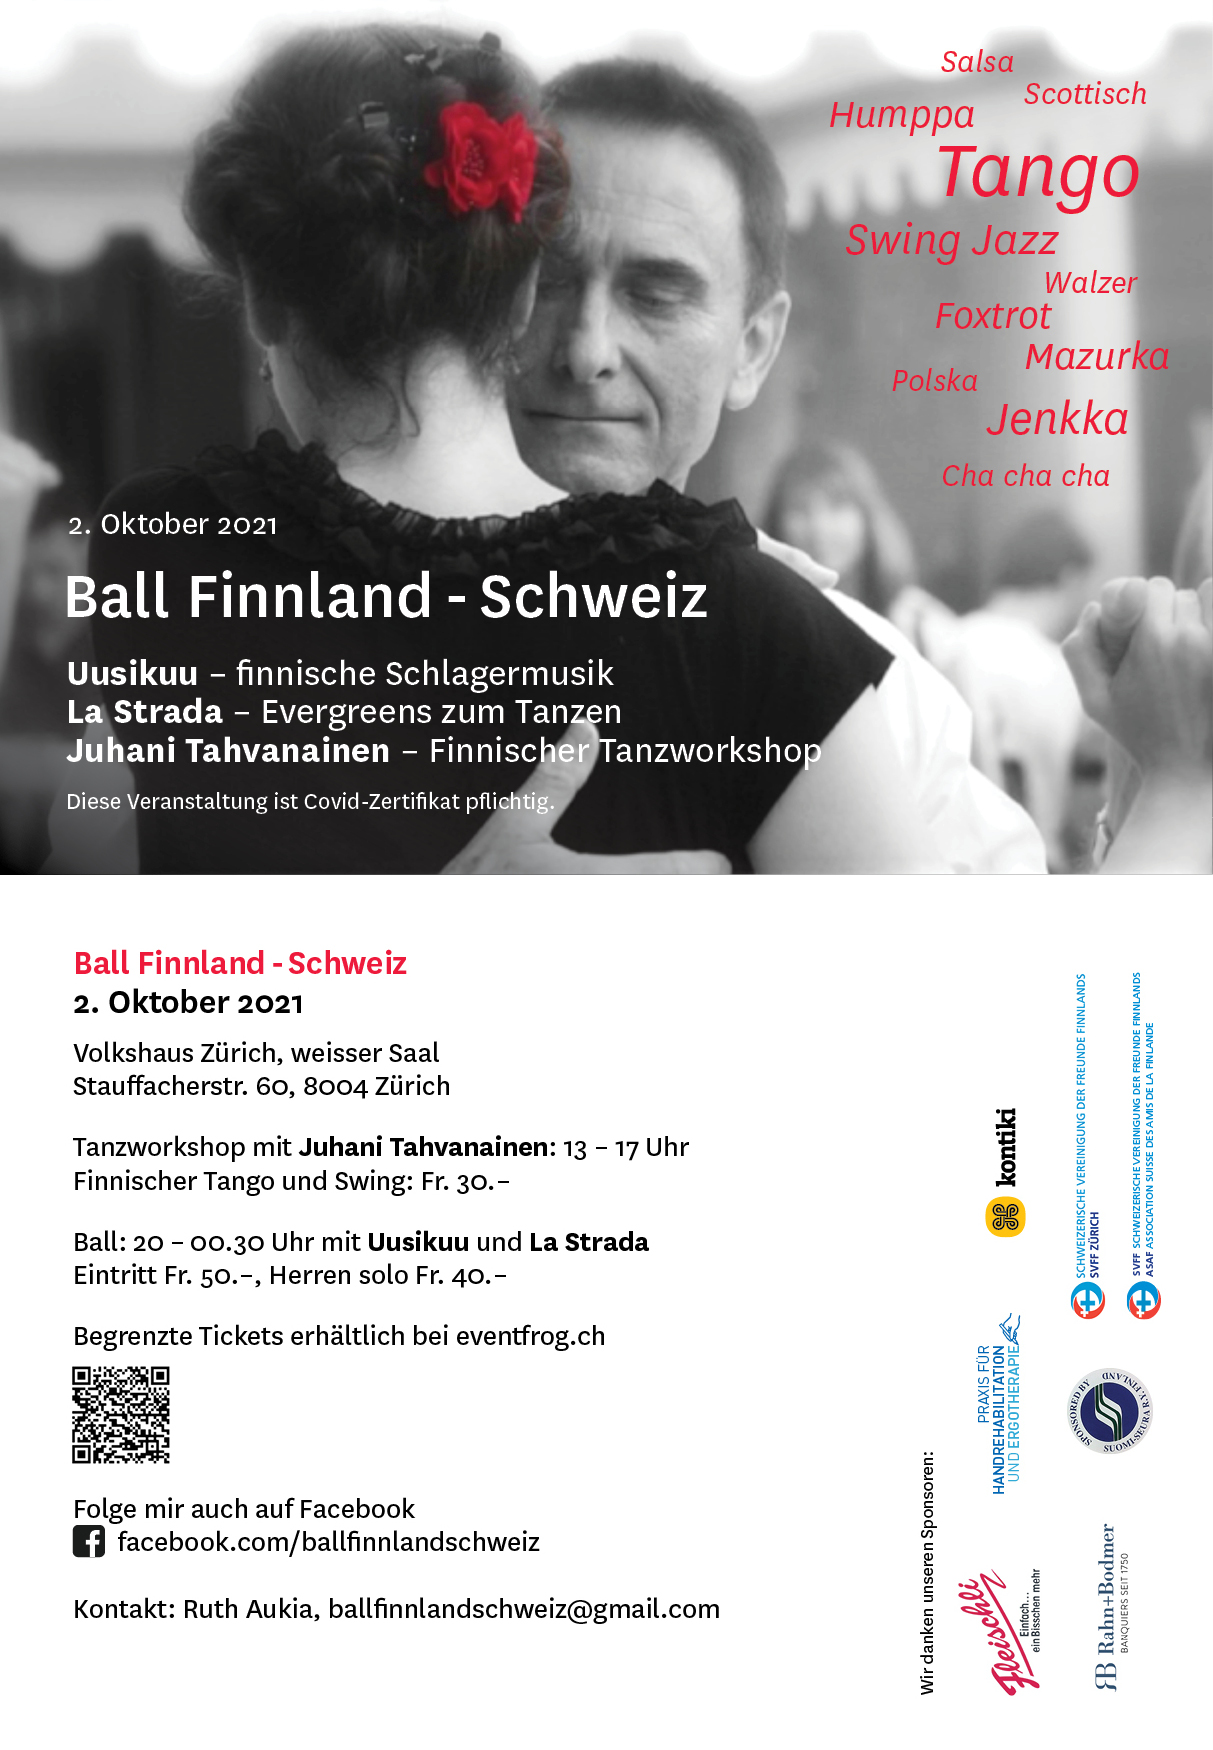 Für Tangoafiaçonados, Finnlandfans und Tanzfreaks: Tanzworkshop Finntango und Swing um 13Uhr, Ball ab 20 Uhr.